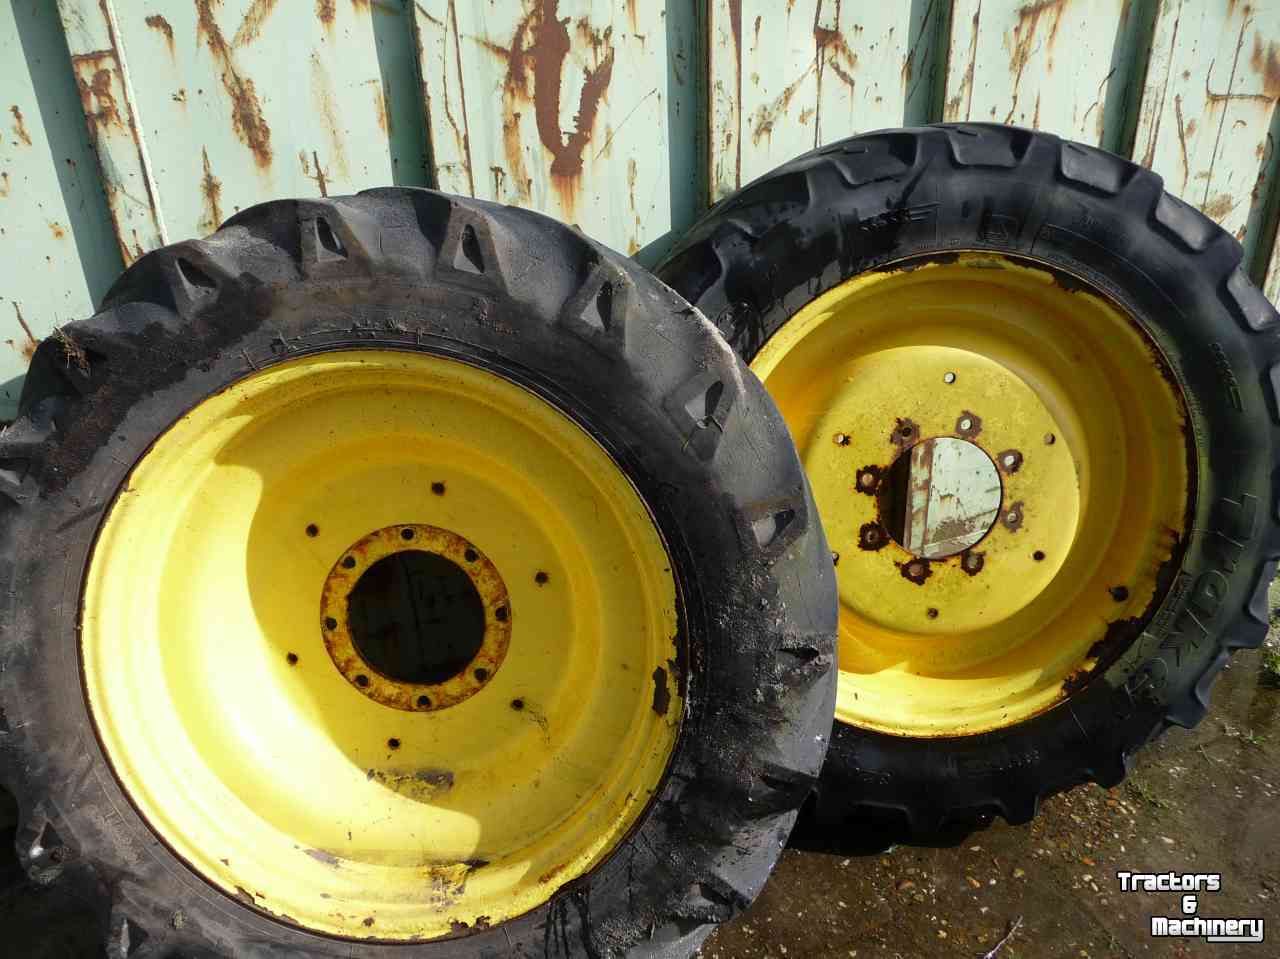 Wheels, Tyres, Rims & Dual spacers  320/80r32